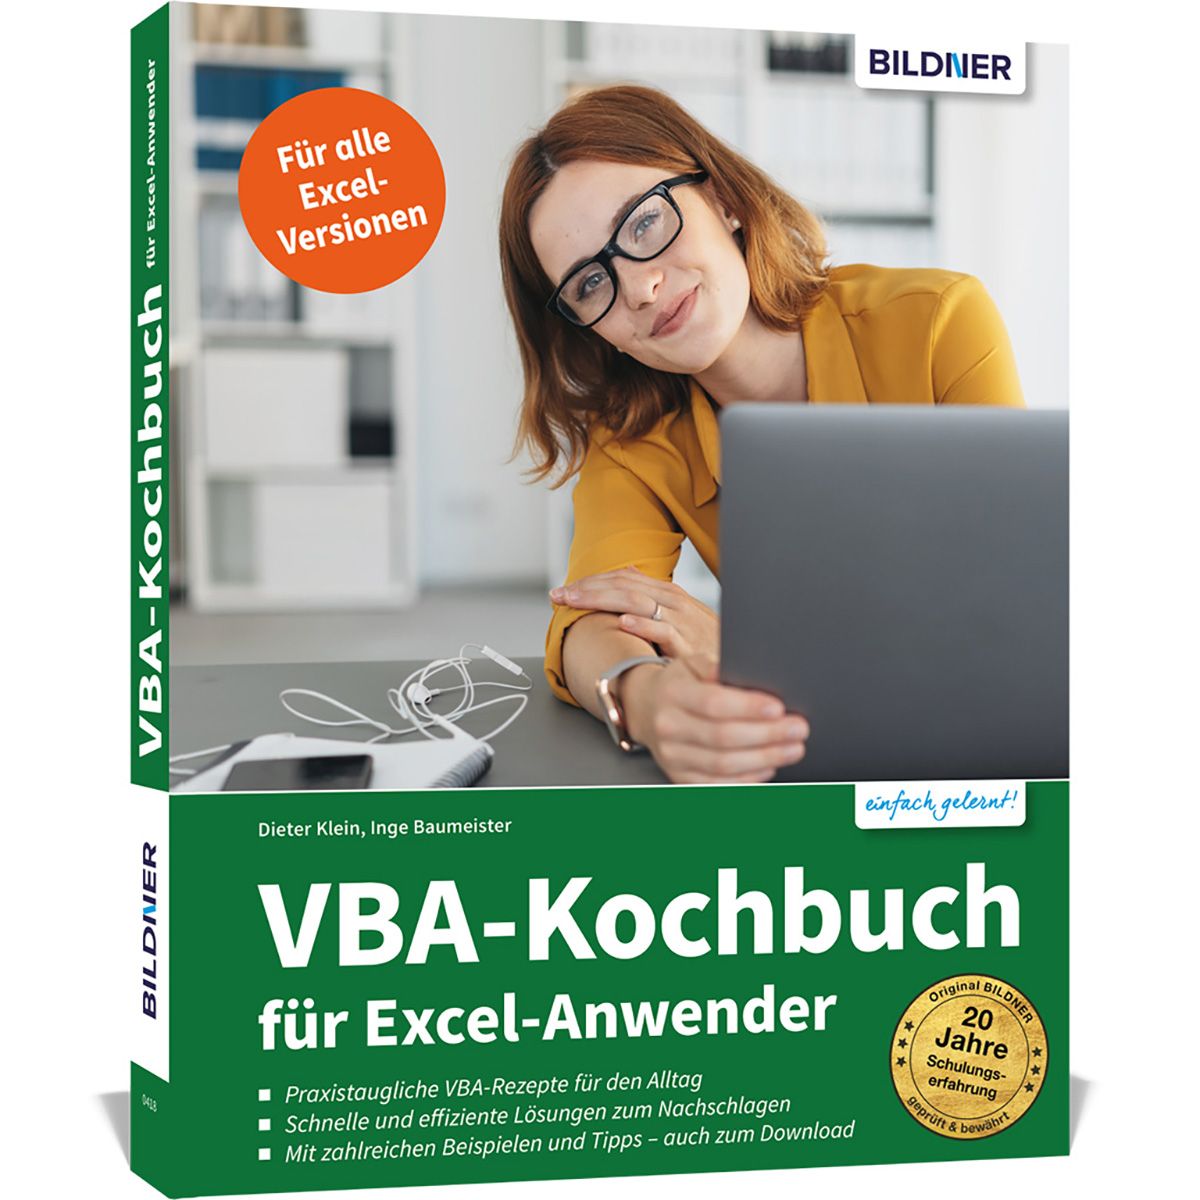 VBA-Kochbuch für Excel-Anwender